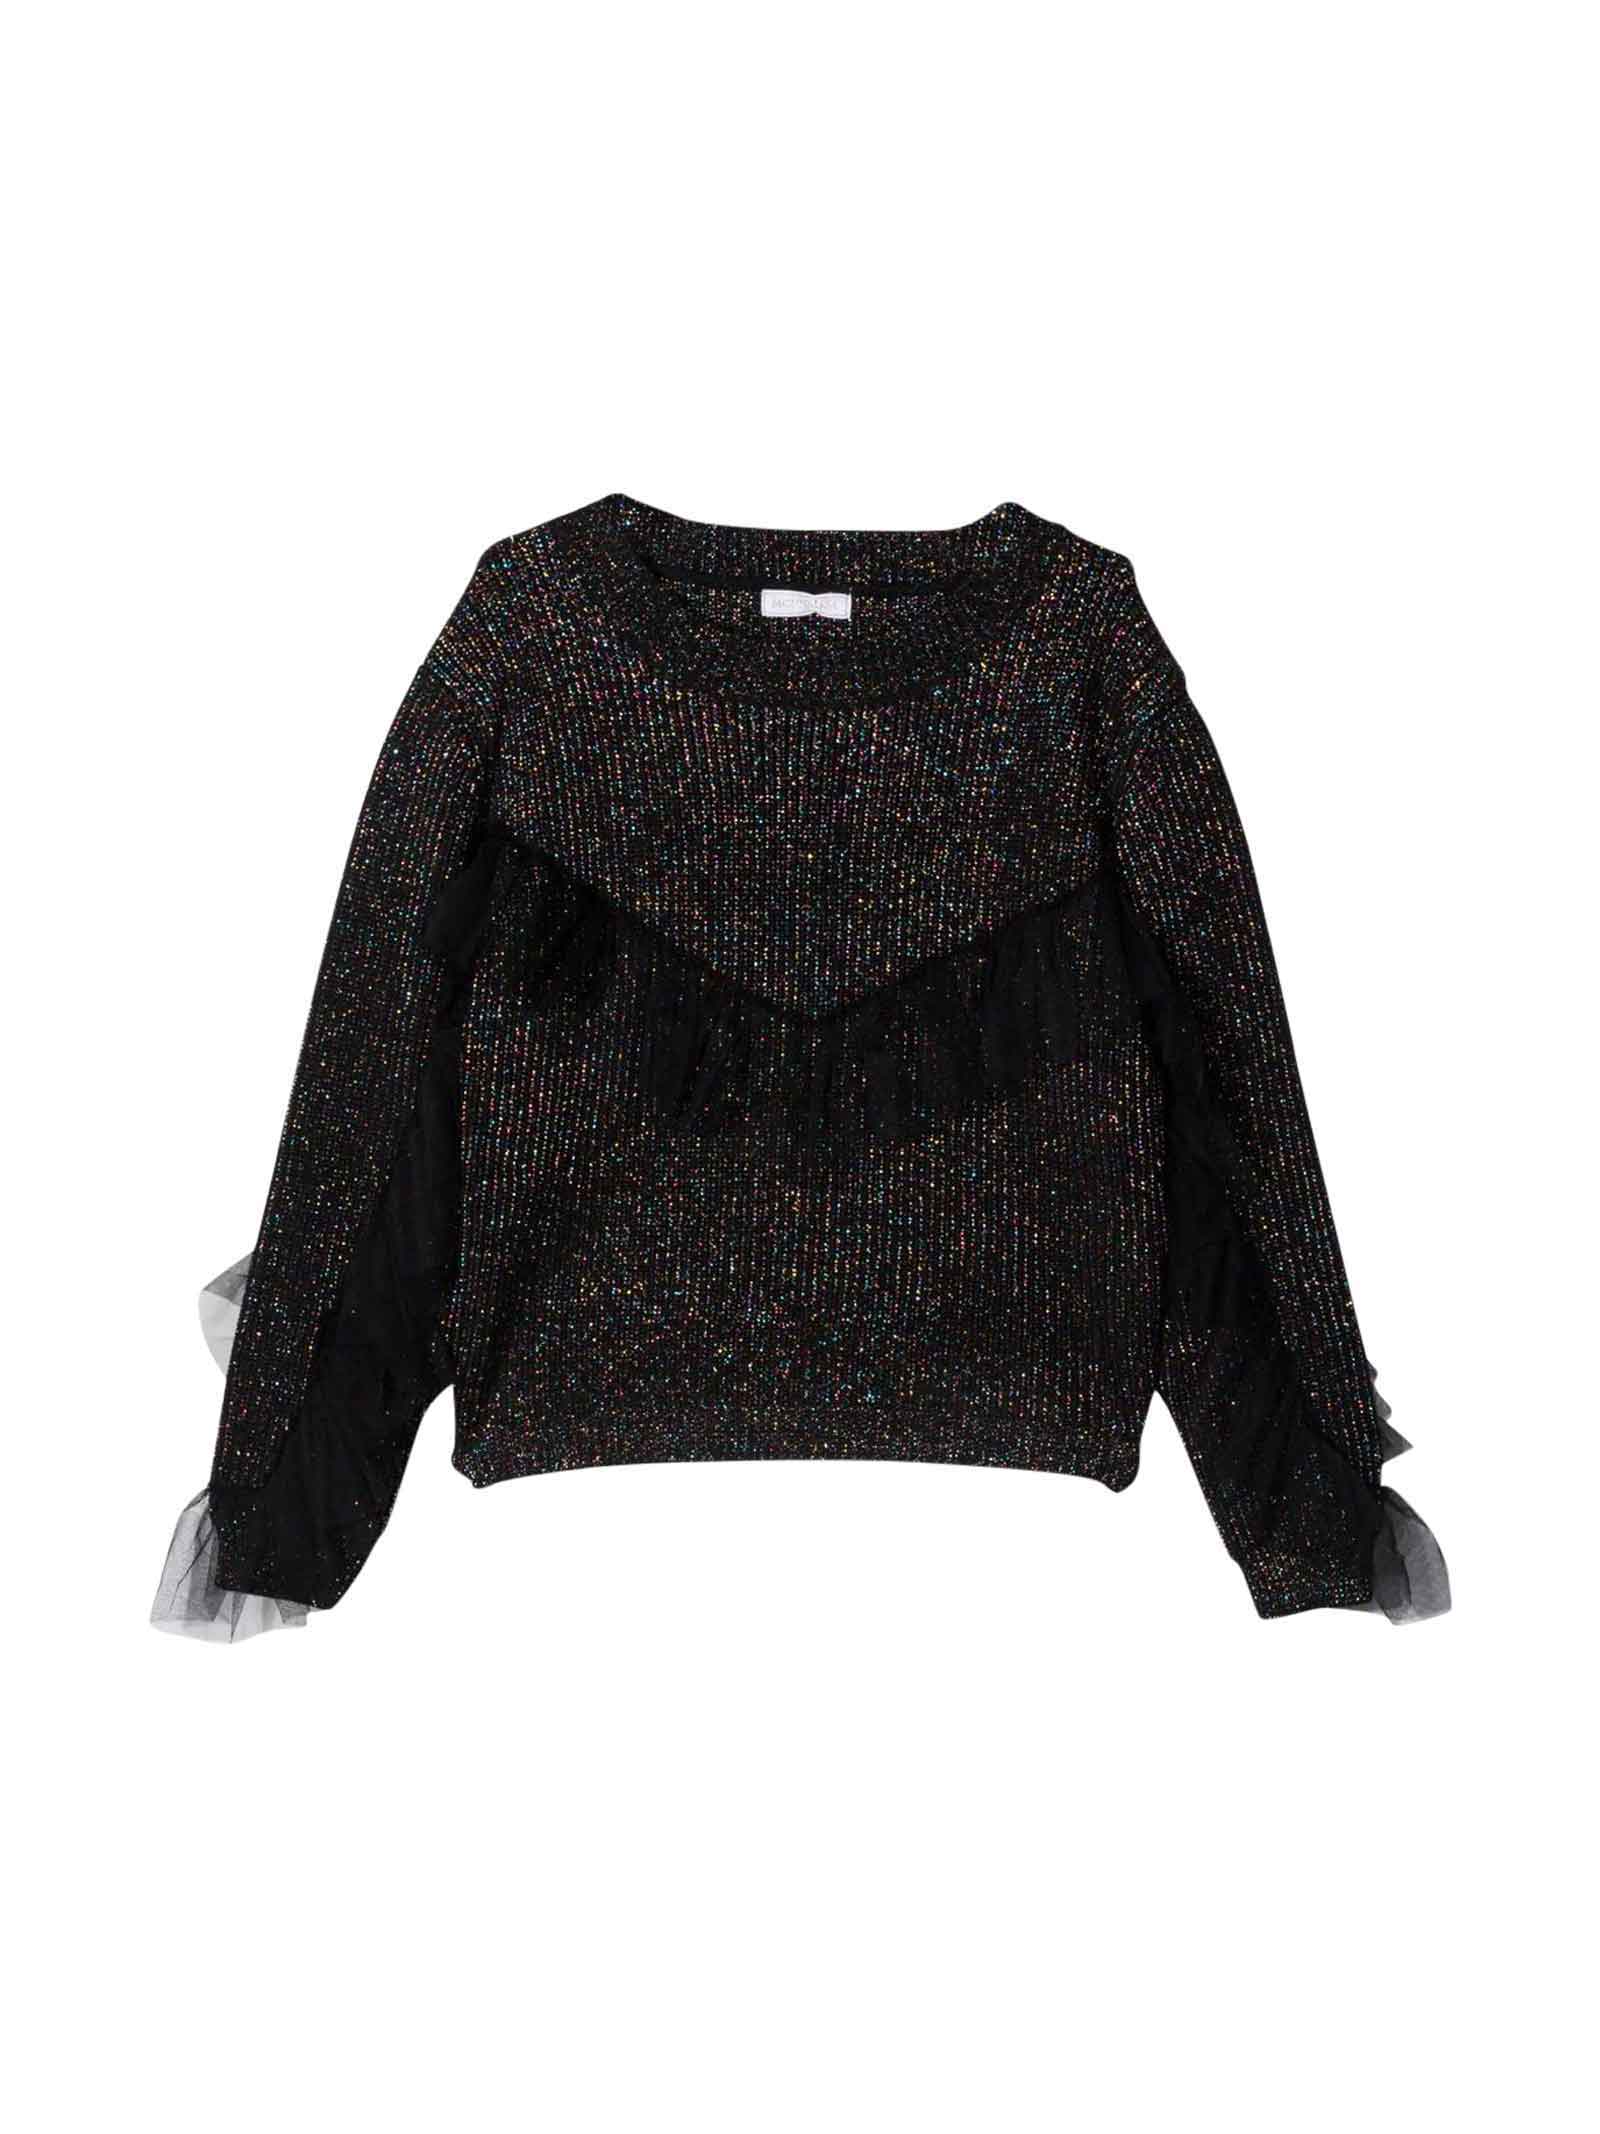 Monnalisa Metallic Black Girl Sweater